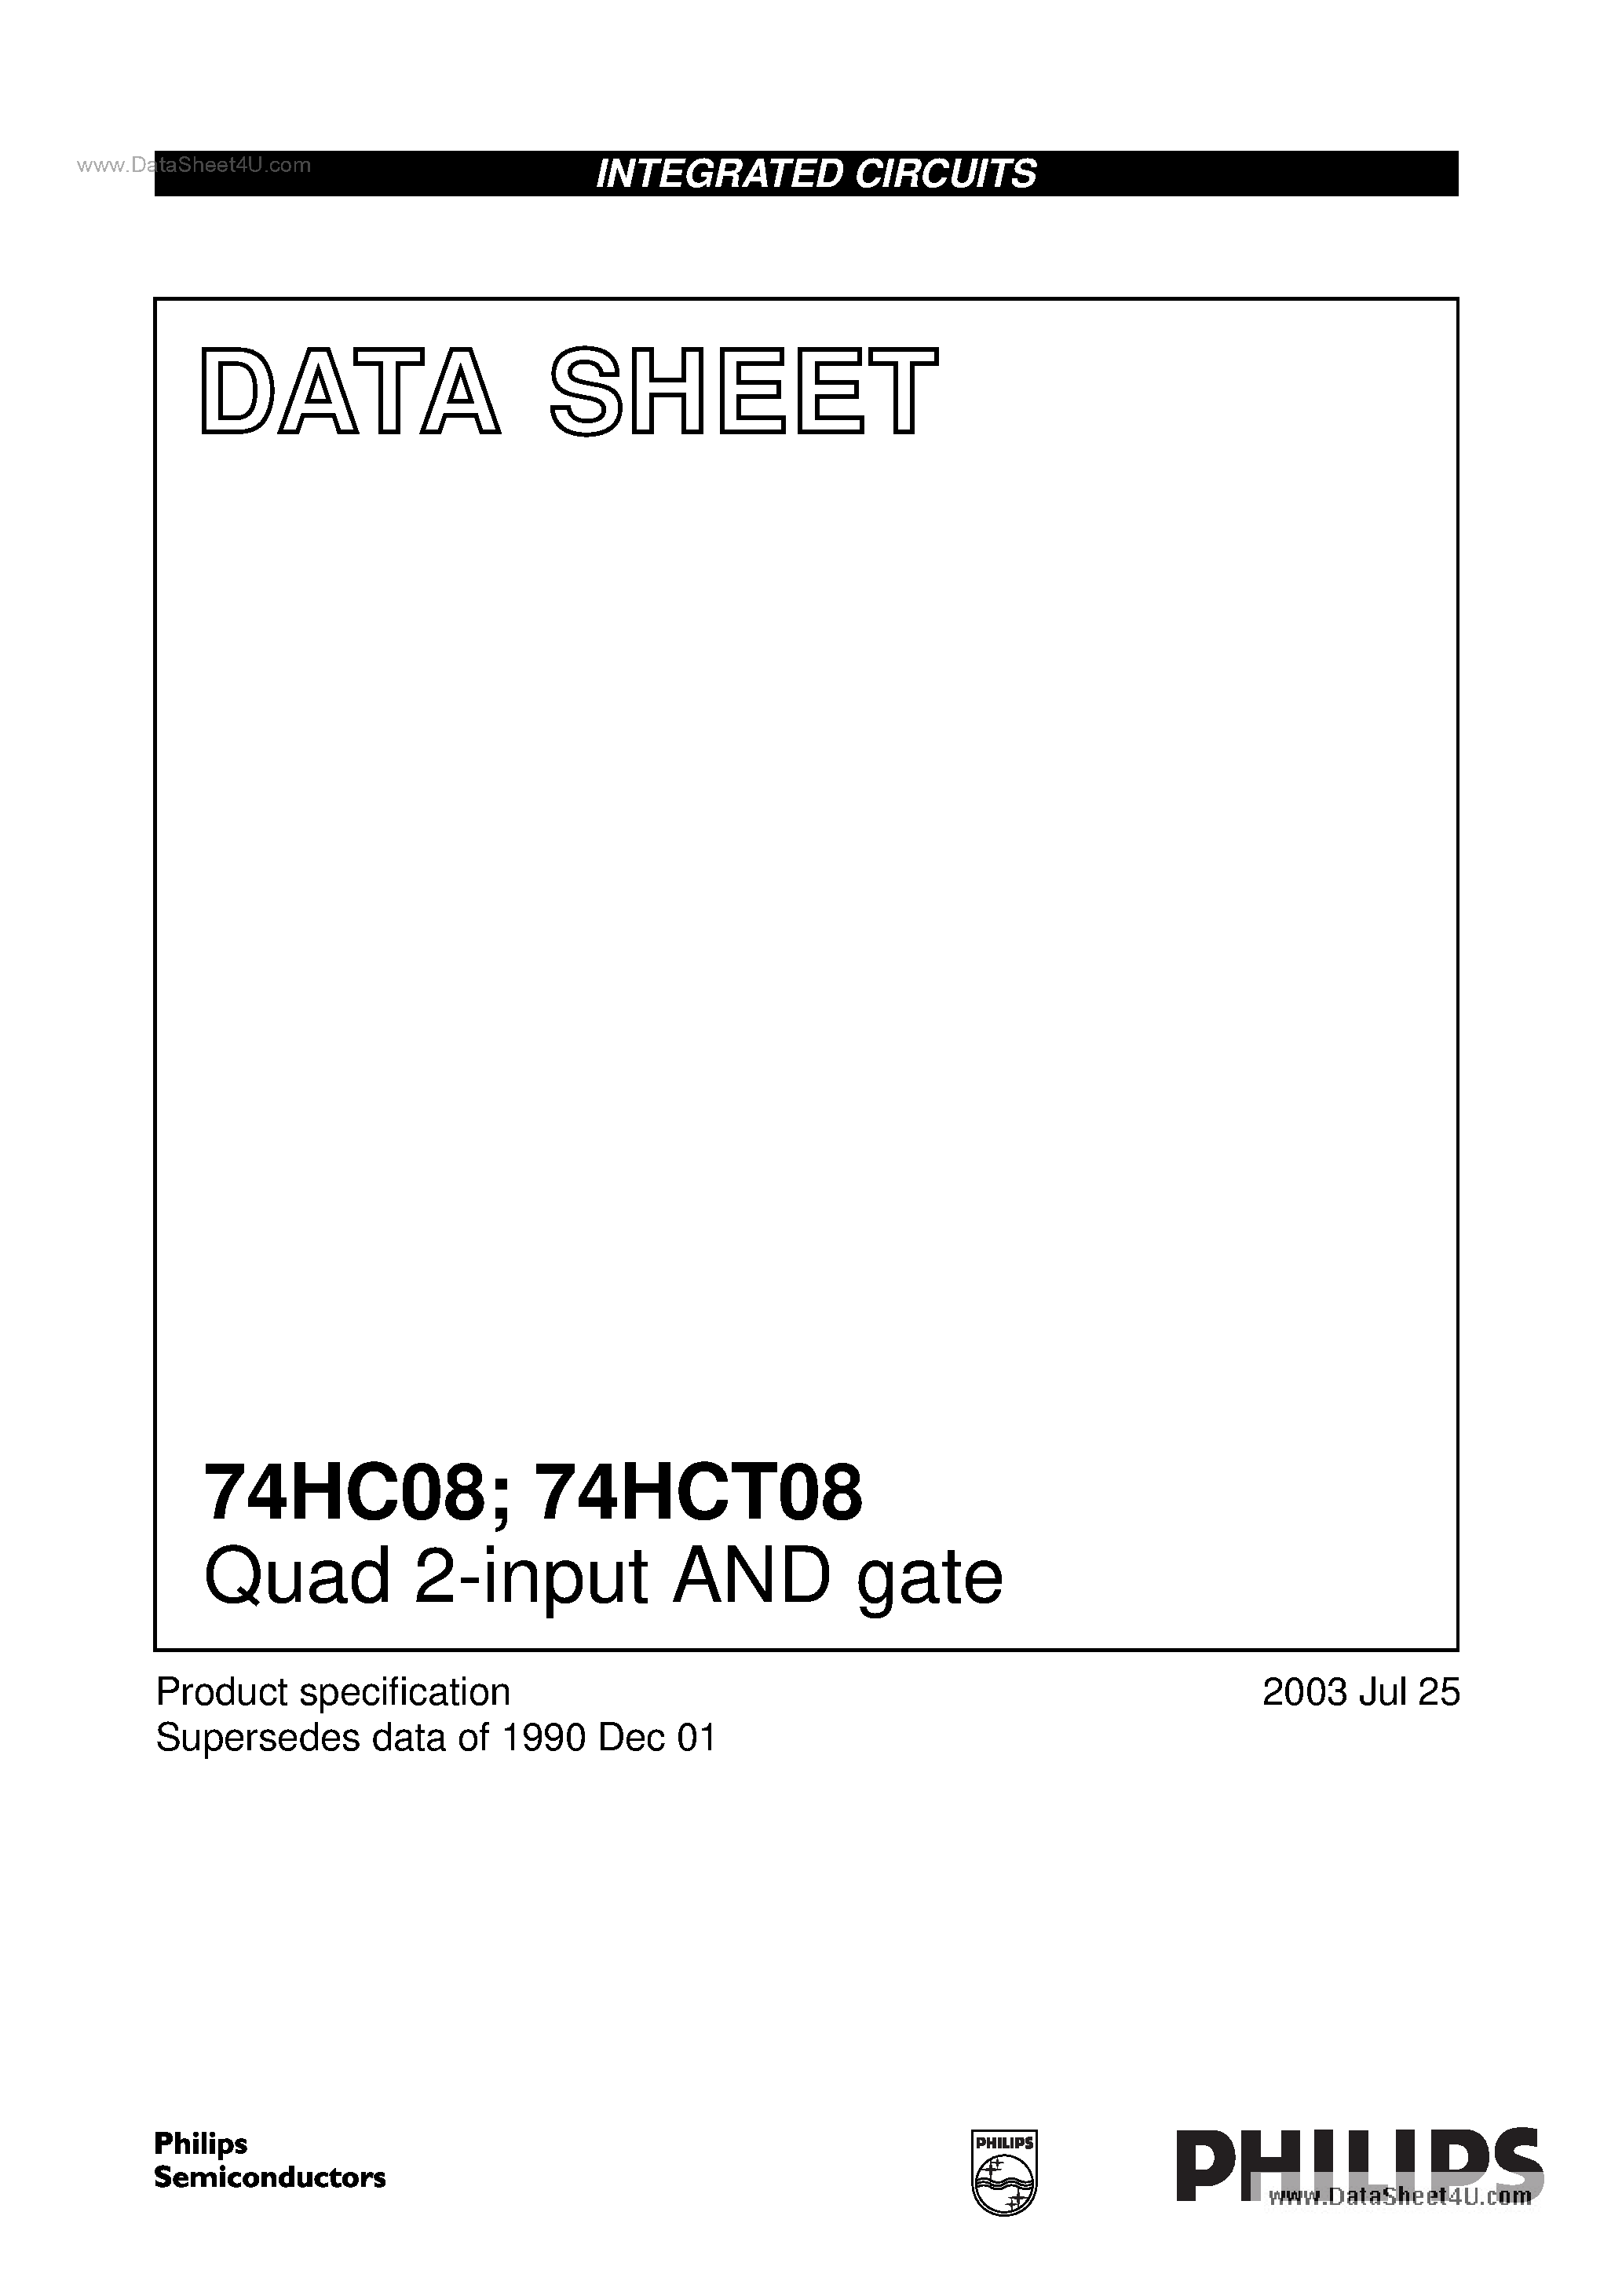 Даташит 74HC08 - Quad 2-input AND gate страница 1